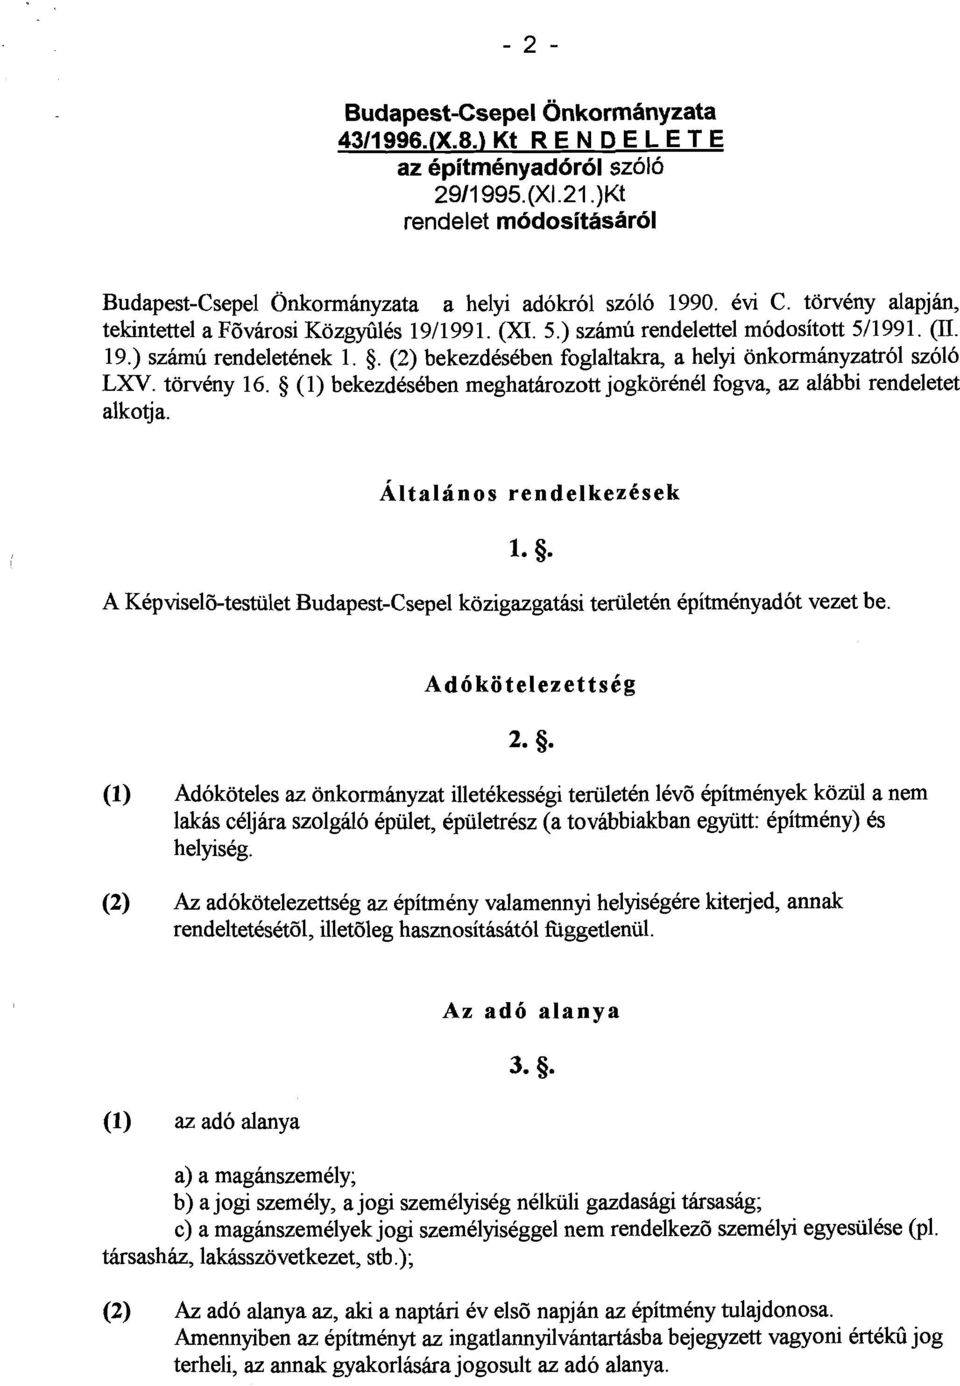 torveny 16. 5 (1) bekezdkeben meghatarozott jogkorenel fogva, az alabbi rendeletet alkotja. A Kepvisel6-testiilet Budapest-Csepel kozigazgathsi teriileten epitmenyadot vezet be.